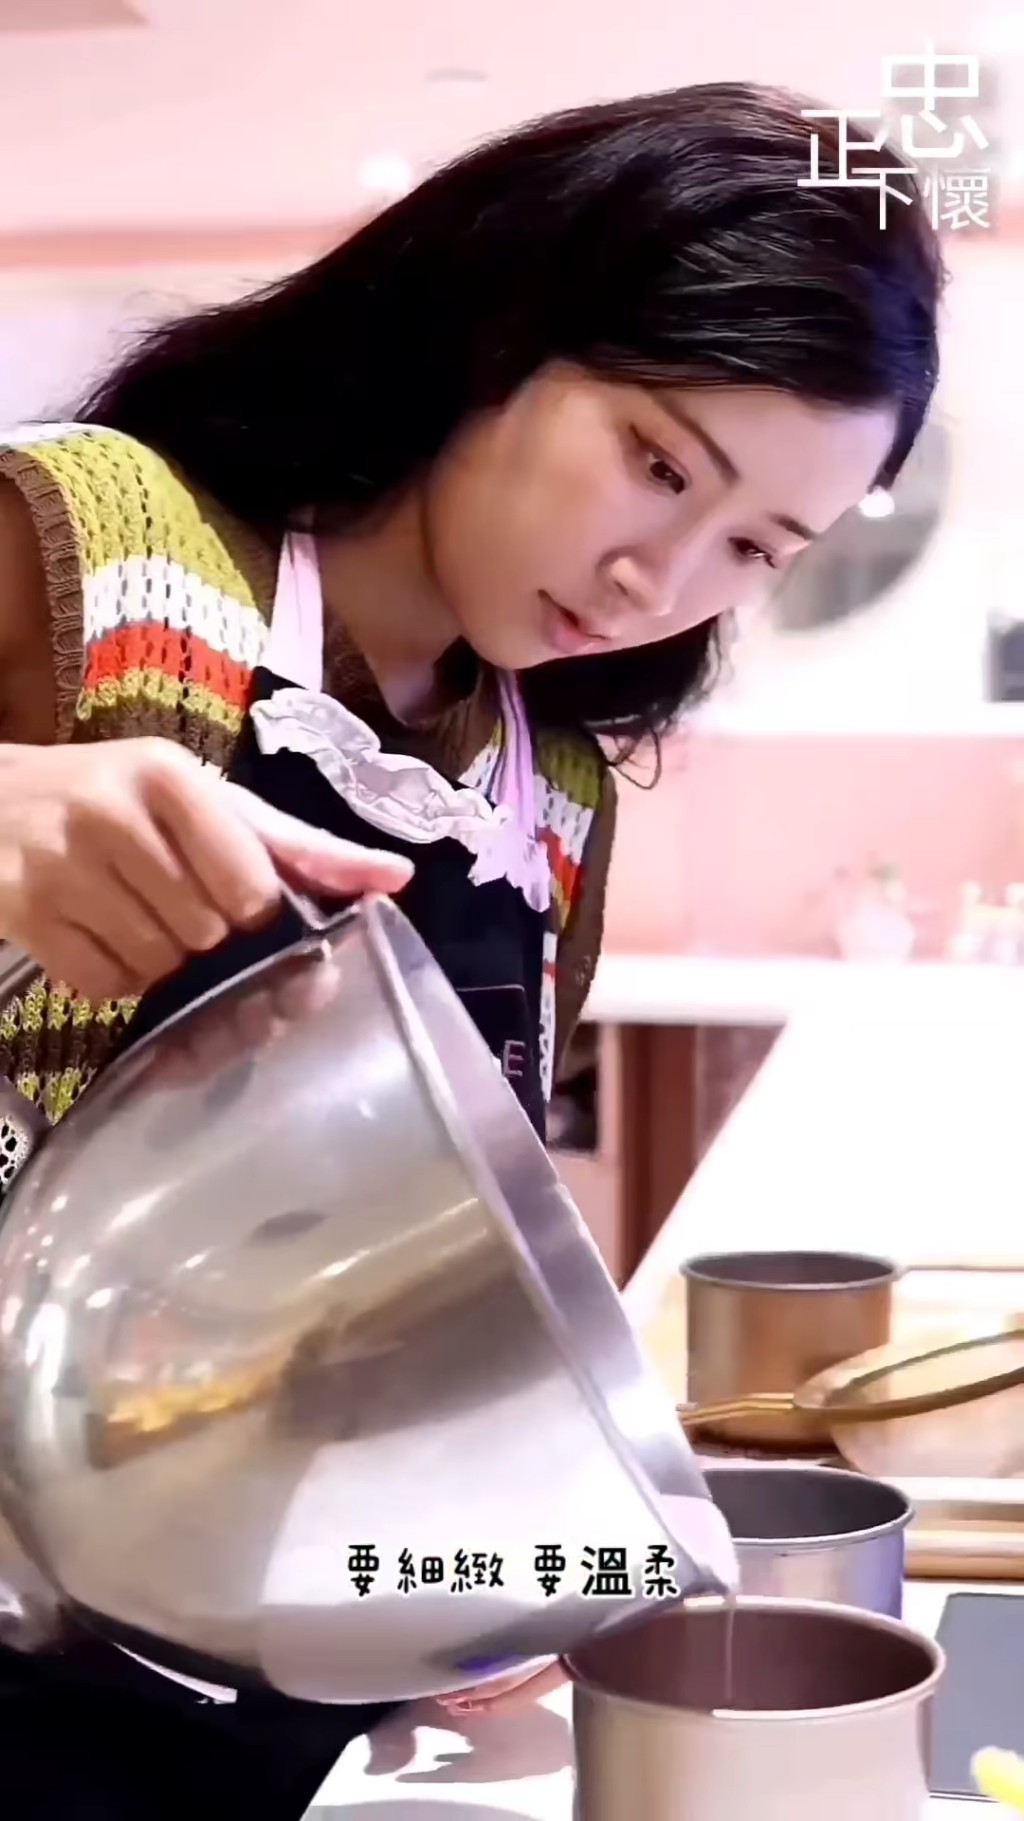 原來早前她為好友、同是TVB女星的尹詩沛親手製蛋糕賀生日。